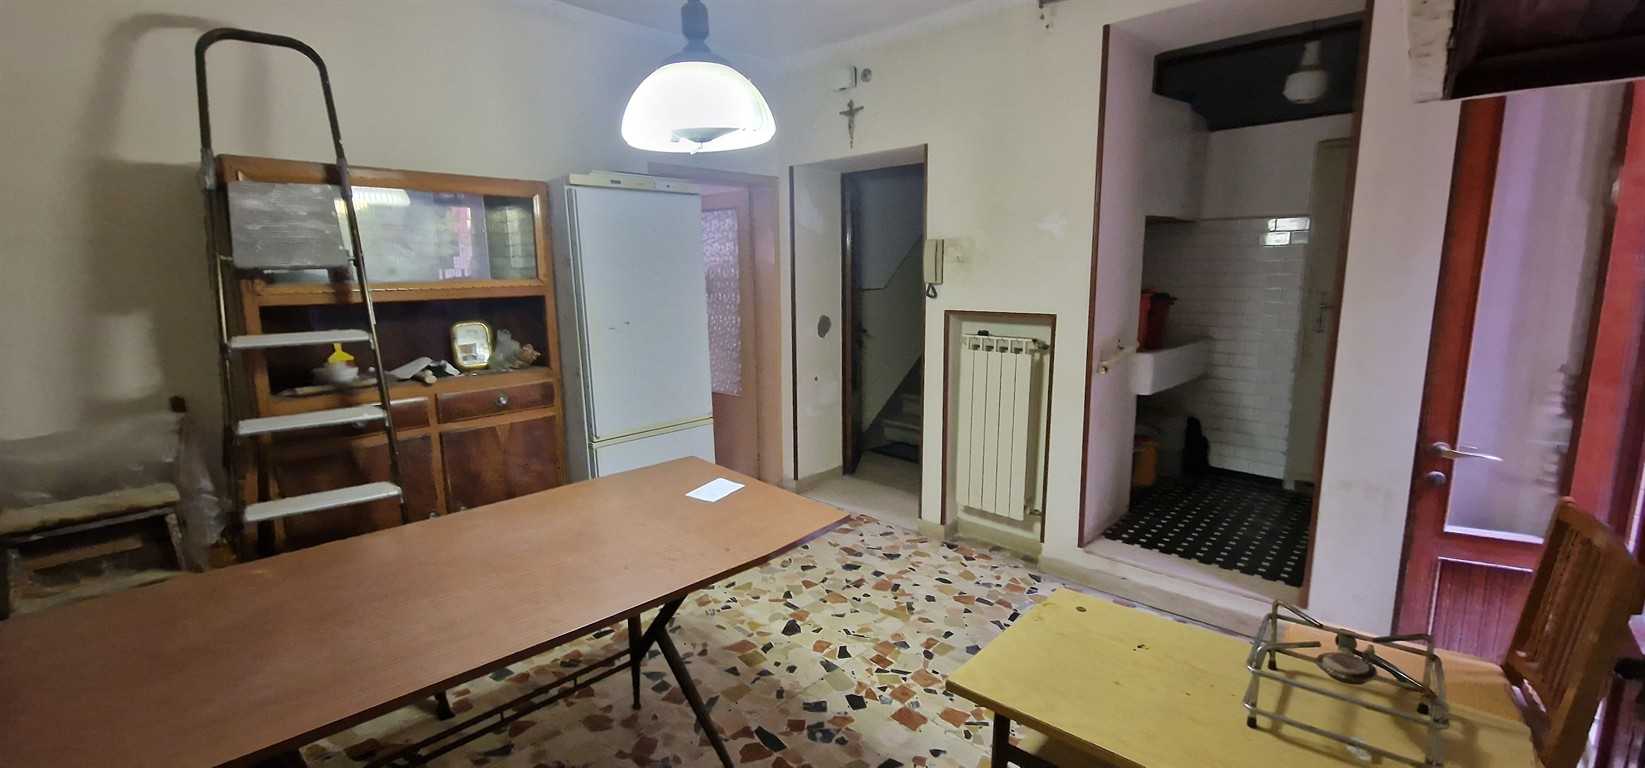 Appartamento in Vendita a Chioggia RIONE DUOMO